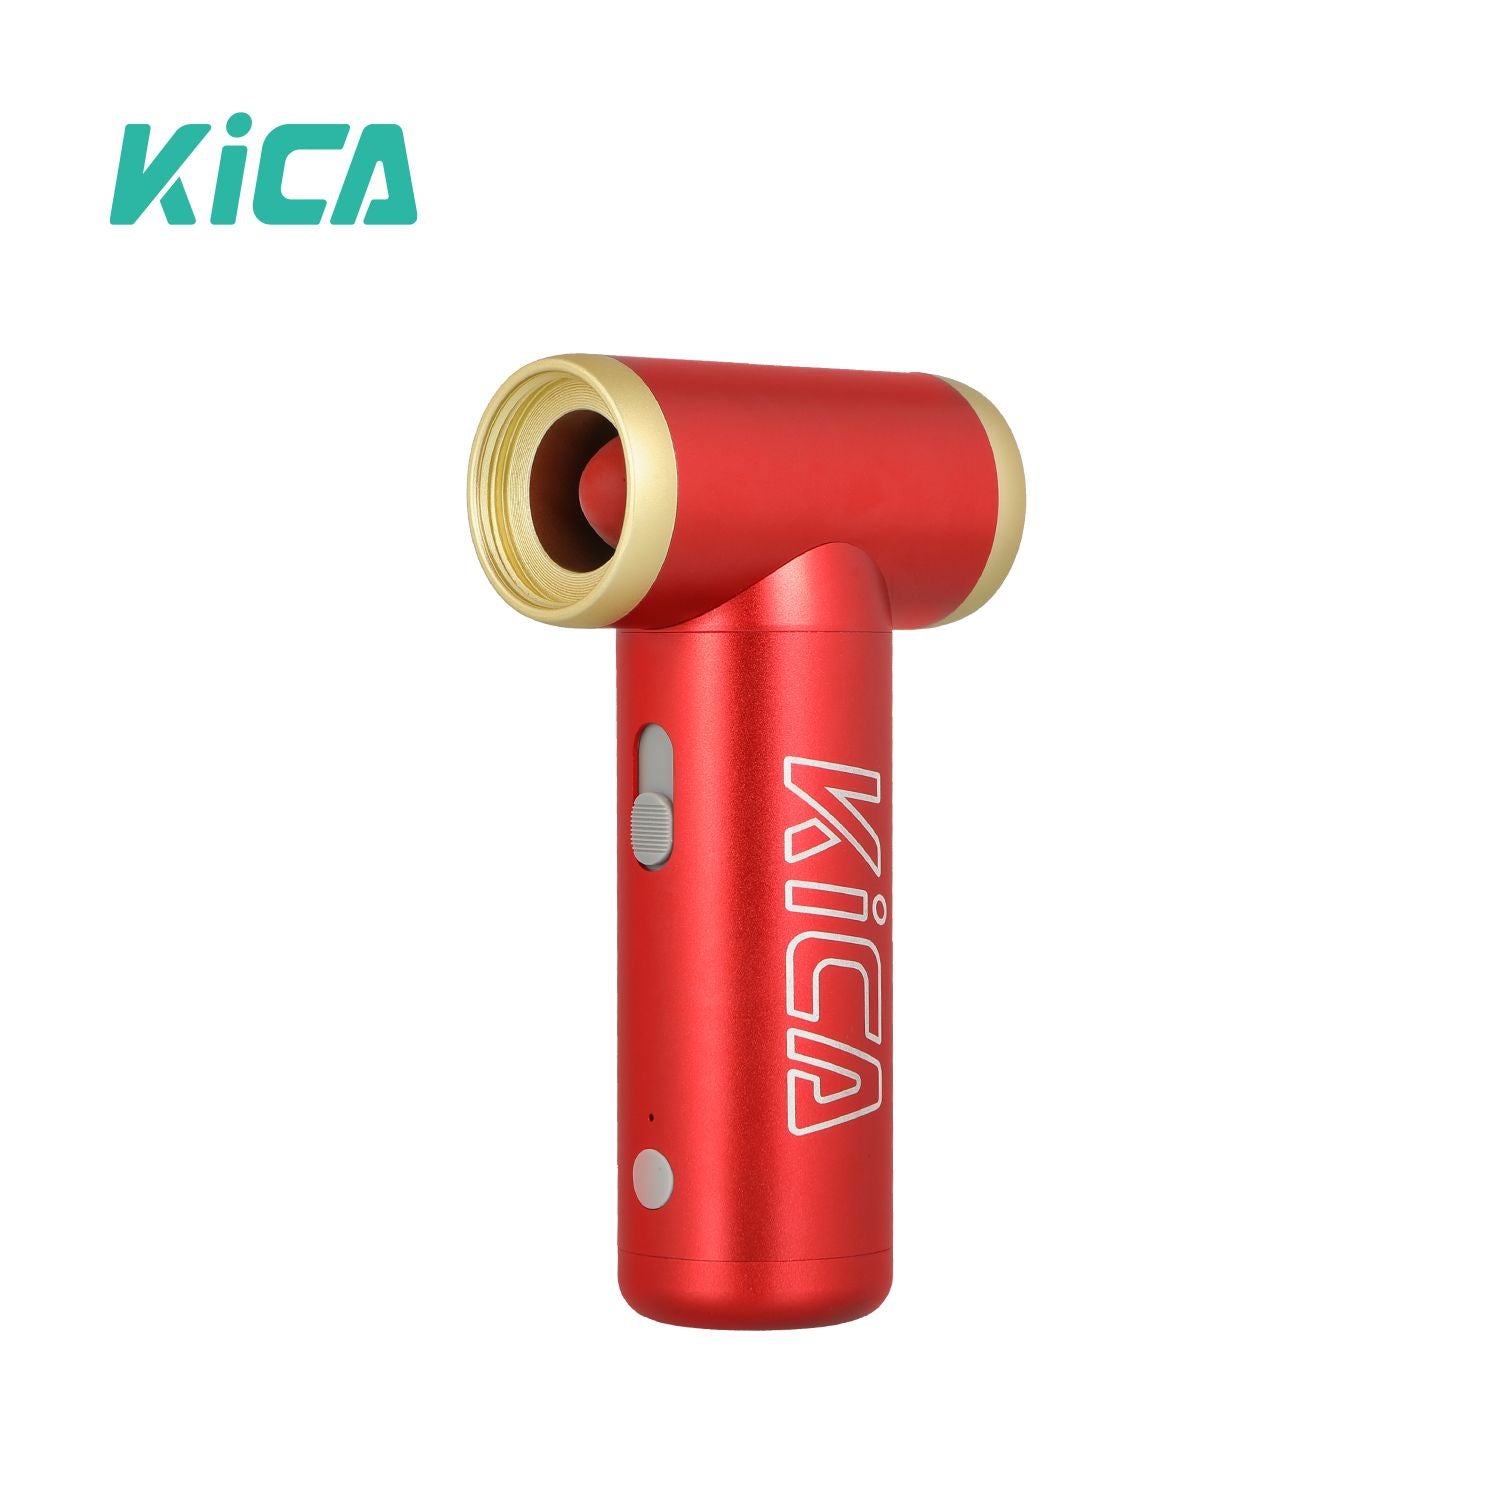 kica-jet-fan-2-red